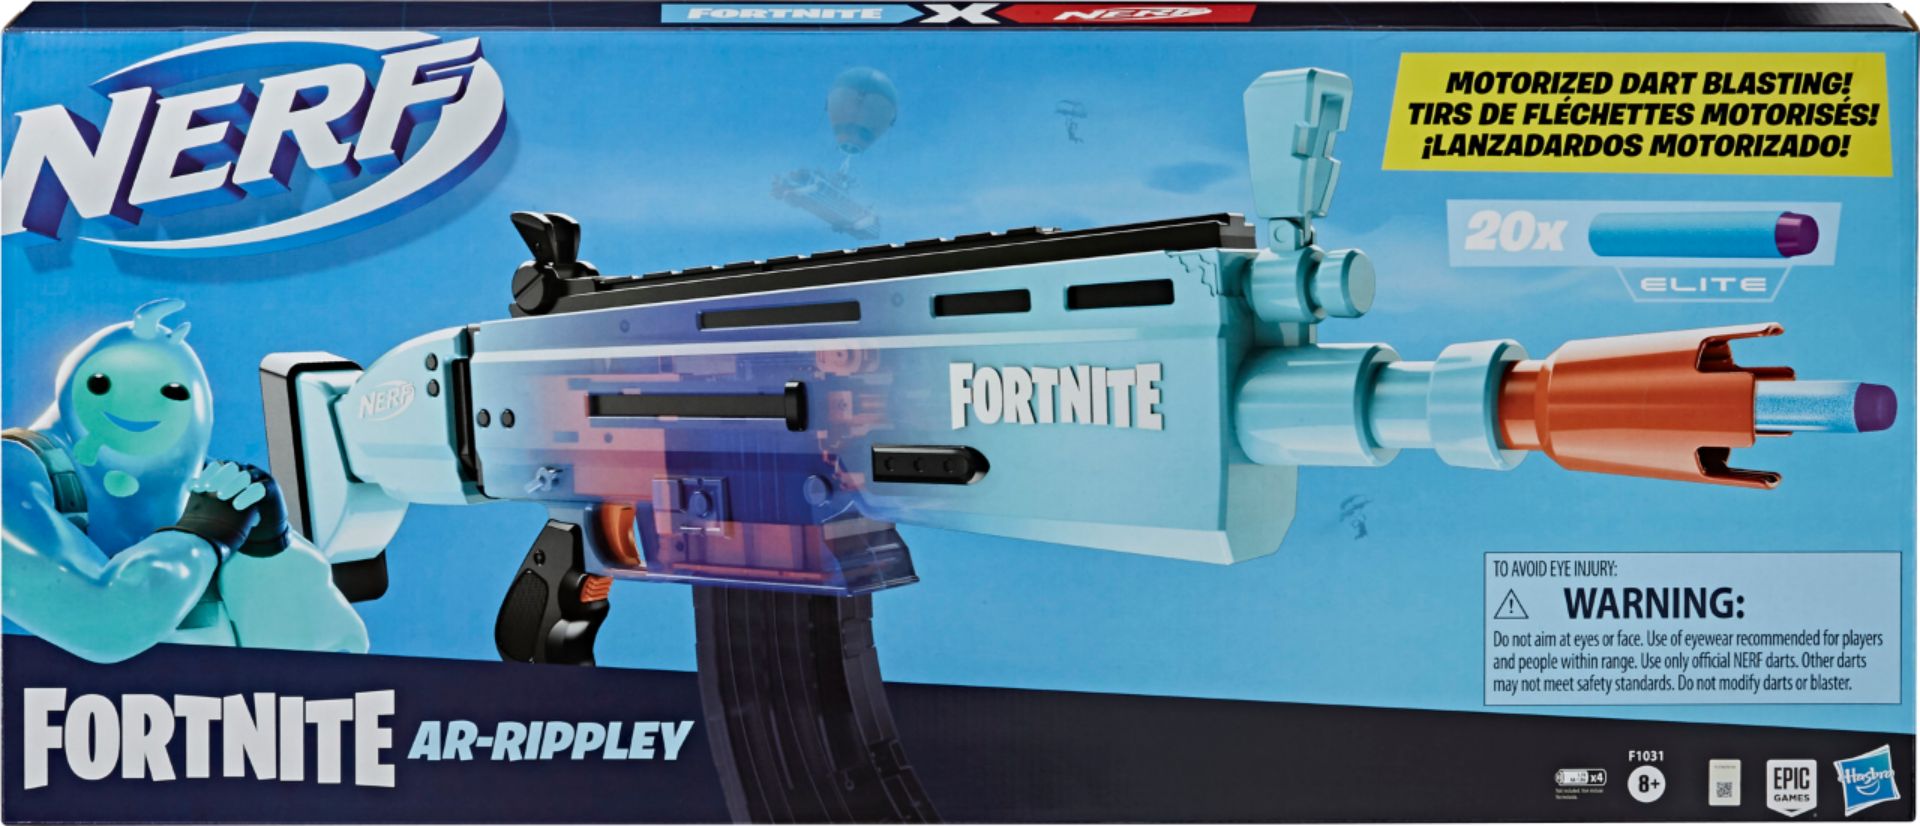 Nerf fará armas de brinquedo inspiradas nas armas de Fortnite